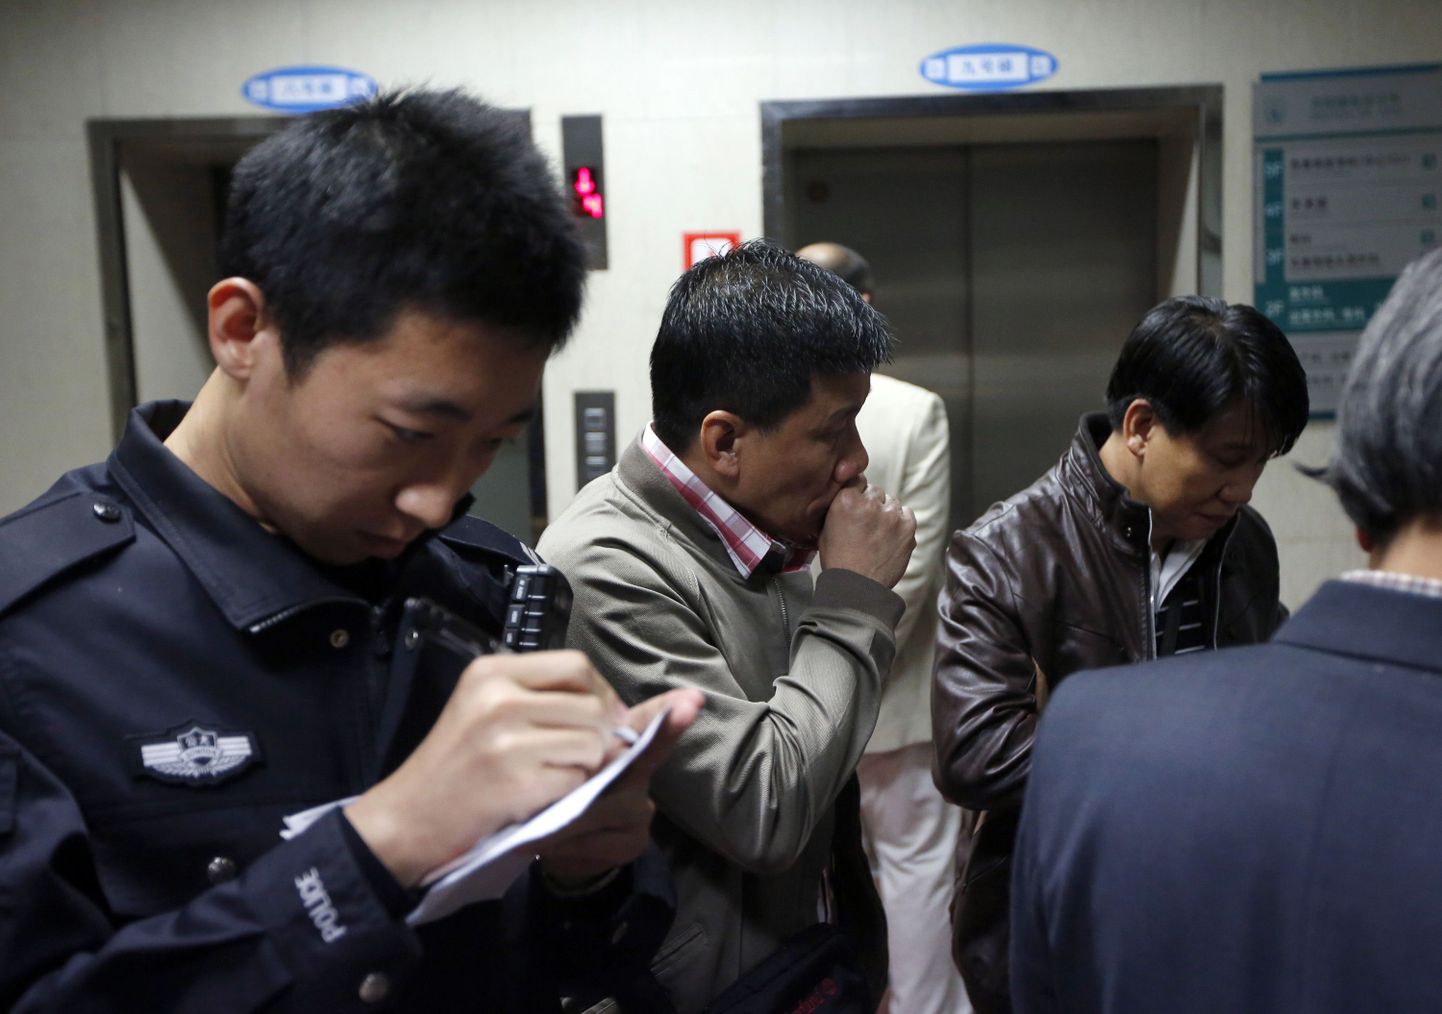 Hiina võimuesindajad sattusid fototöötluse tõttu naerualuseks